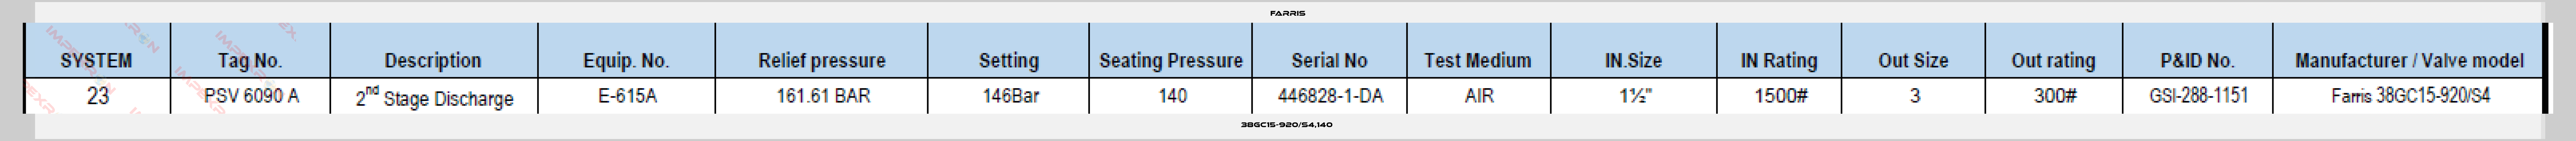 Farris-38GC15-920/S4,140 